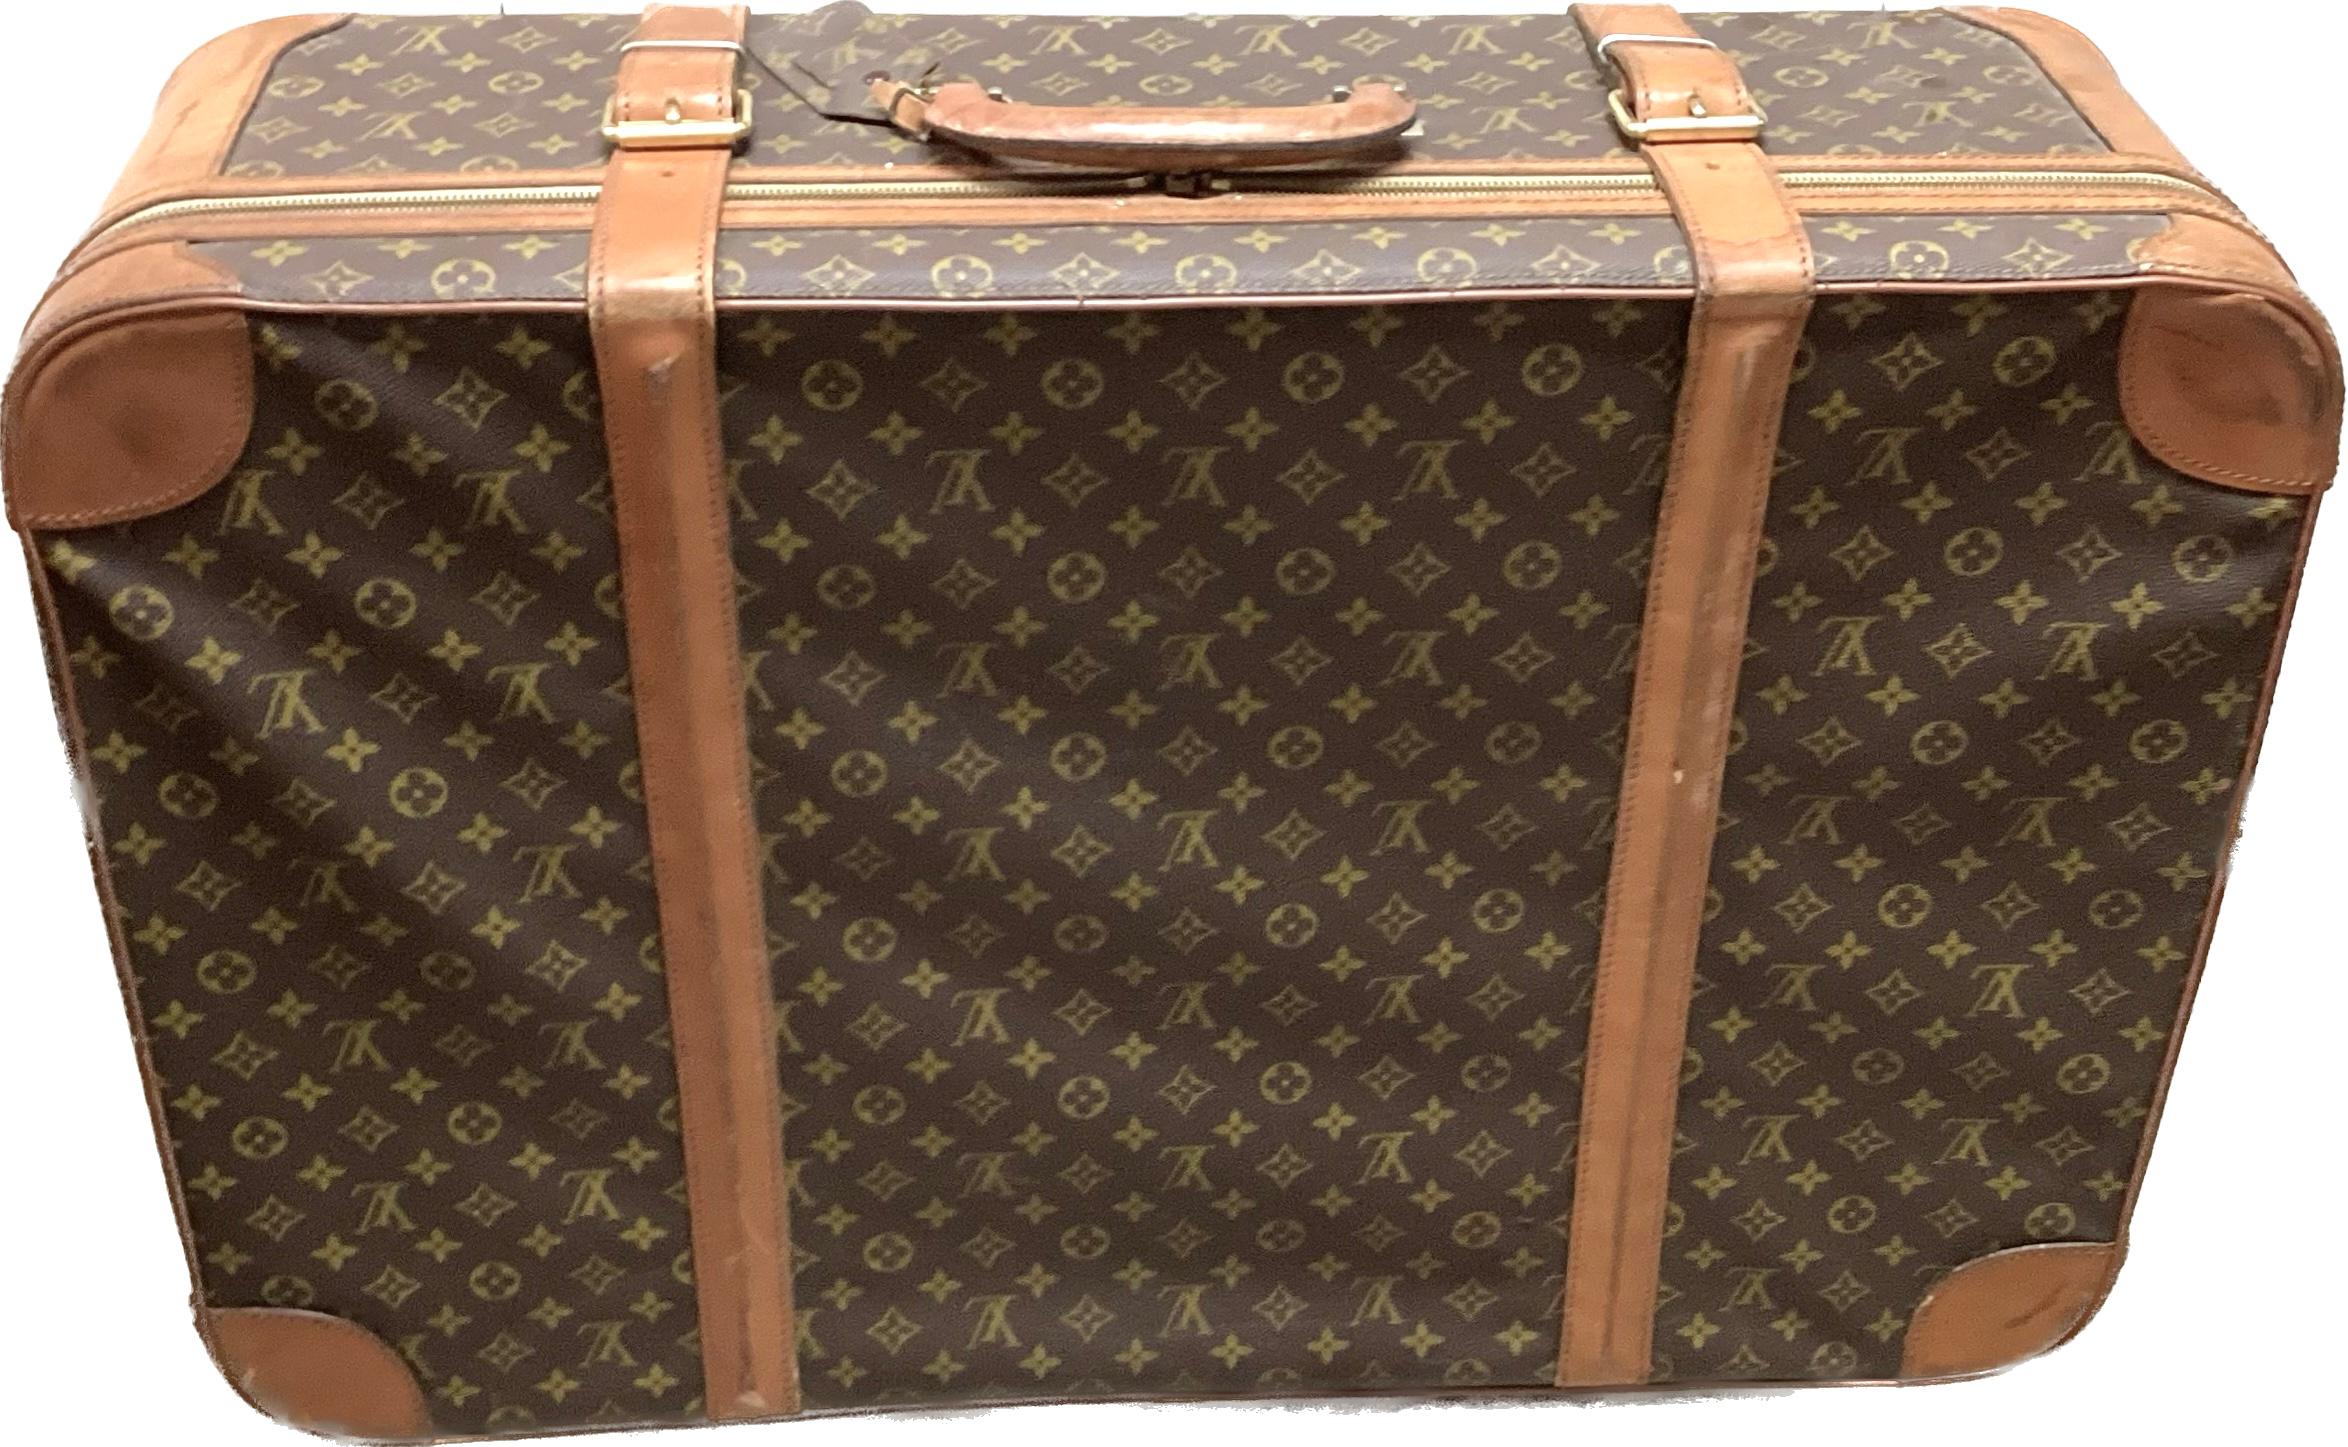 Großer Vintage Louis Vuitton Lederkoffer. Dieses schöne Gepäckstück hat einen runden Griff und Schnallenverschlüsse. Der cremefarbene Innenstoff ist in gutem Zustand und hat zwei Seitentaschen und Schnallenverschlüsse. Inklusive Schloss und